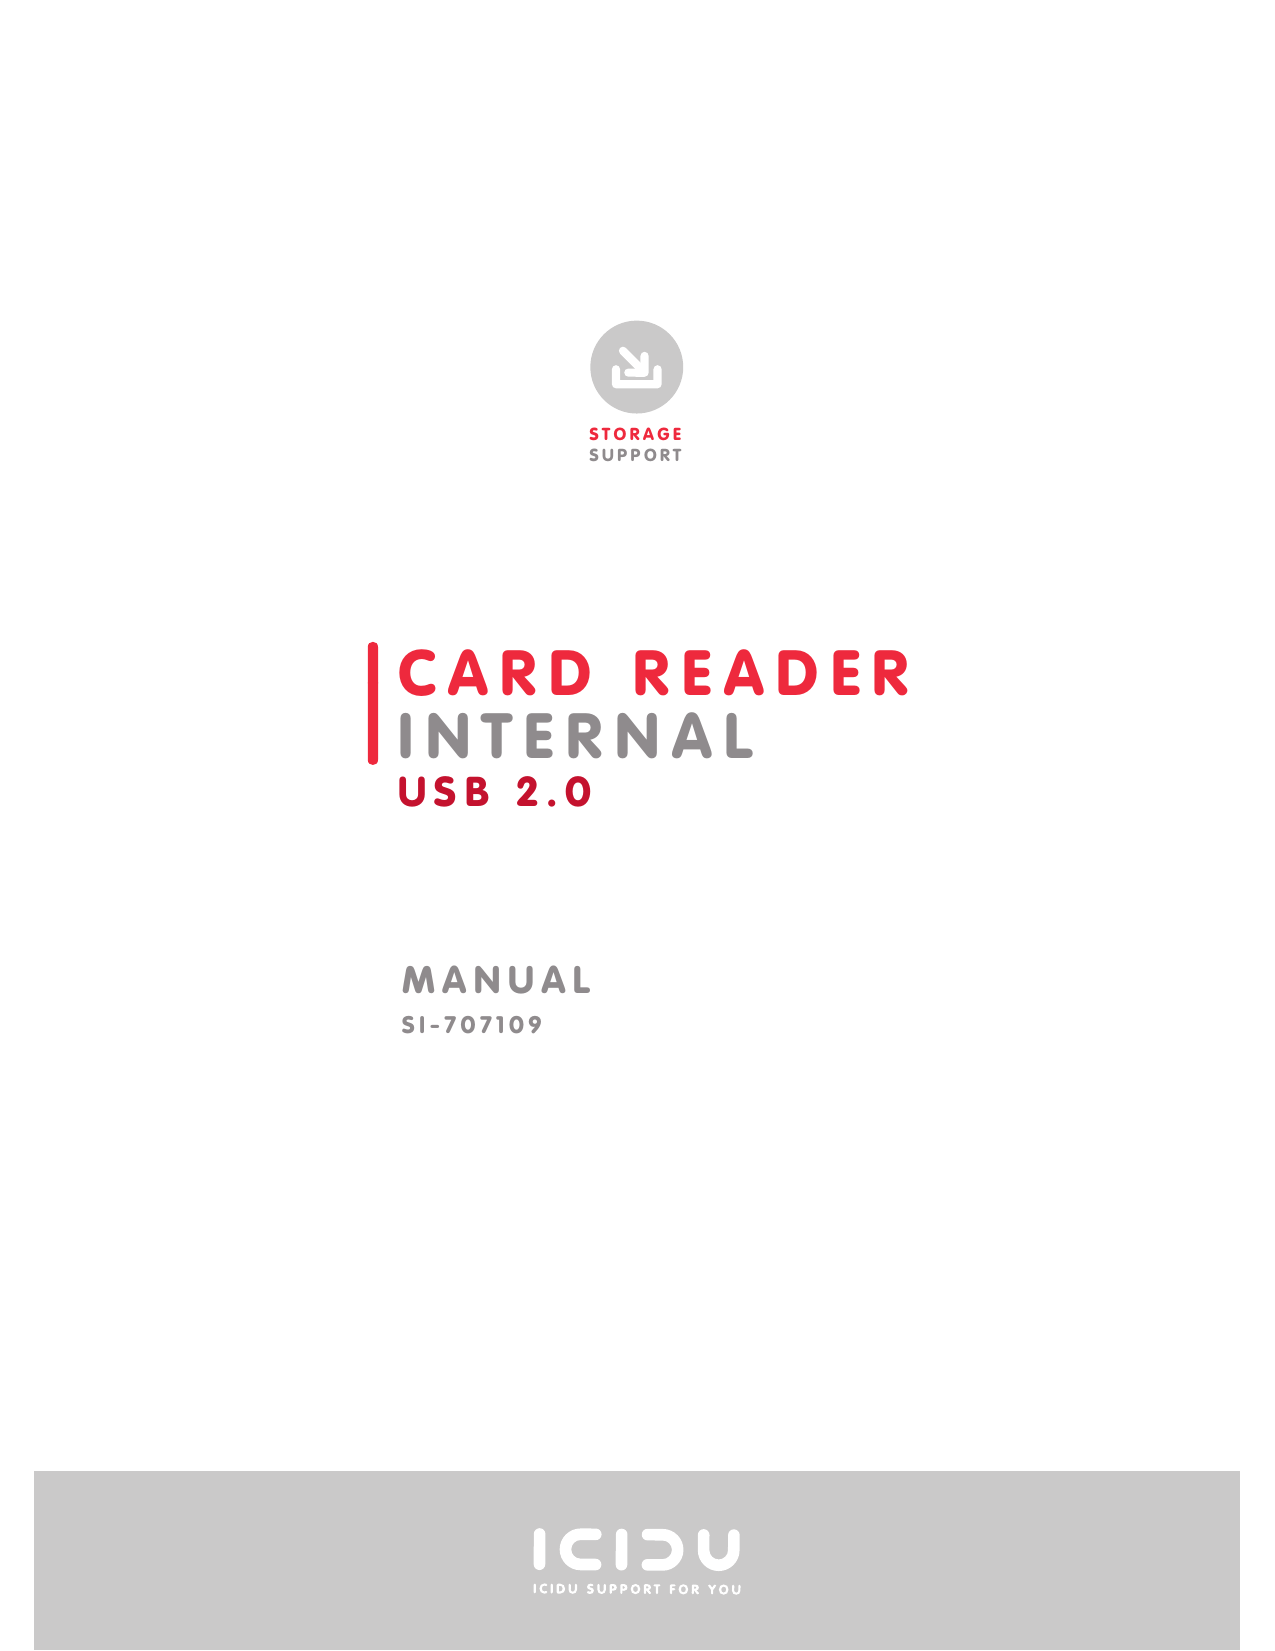 sunpak 72 in 1 card reader software